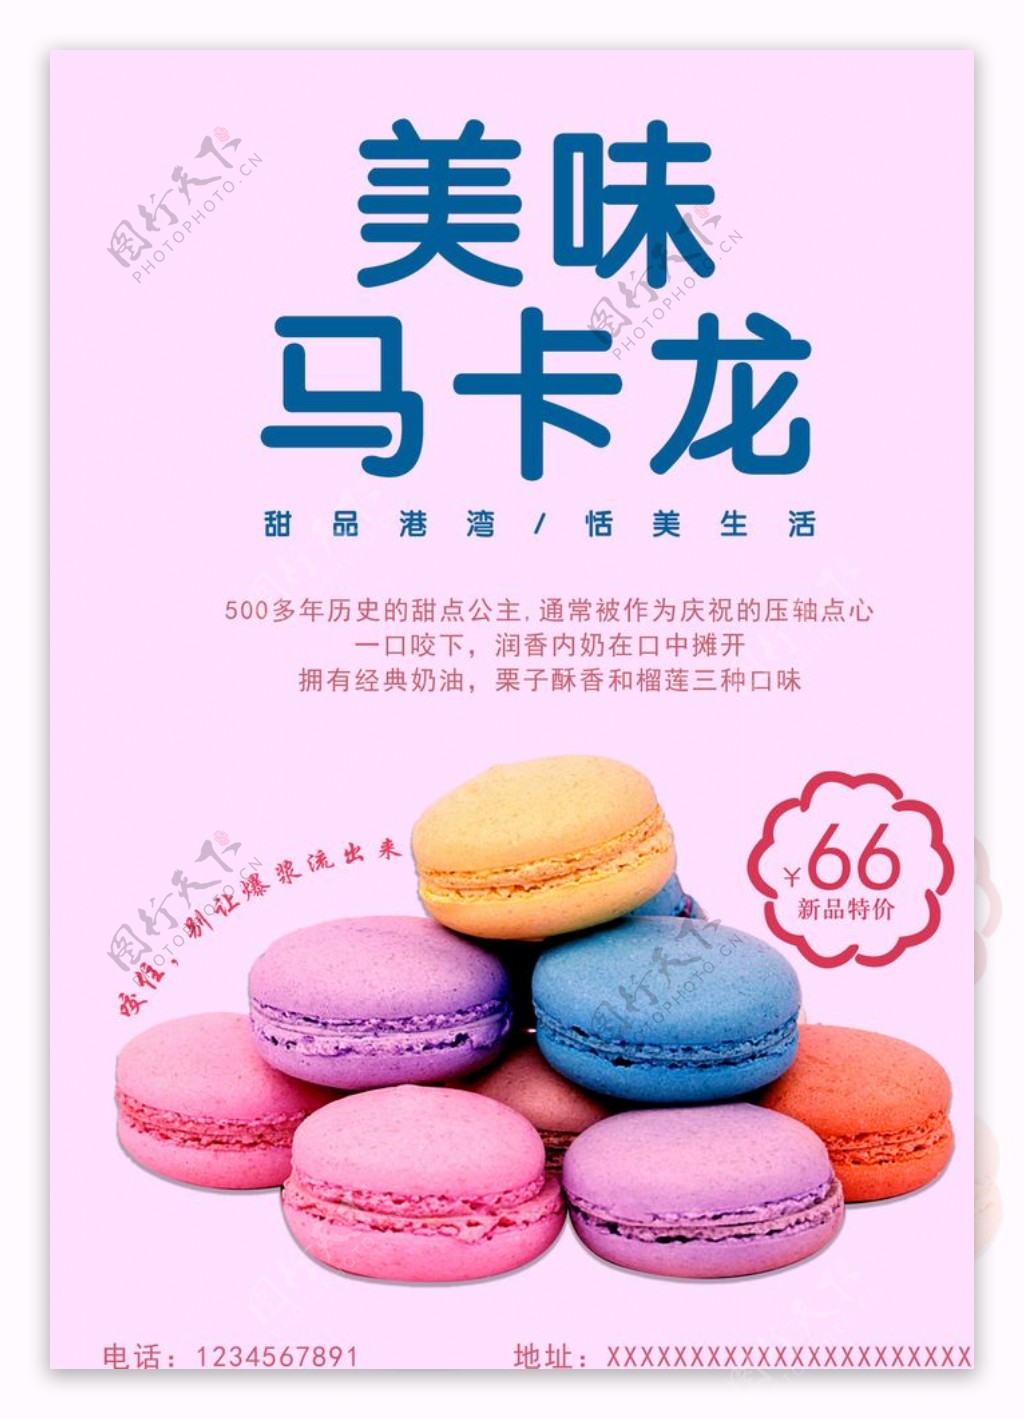 甜品促销马卡龙海报宣传单图片